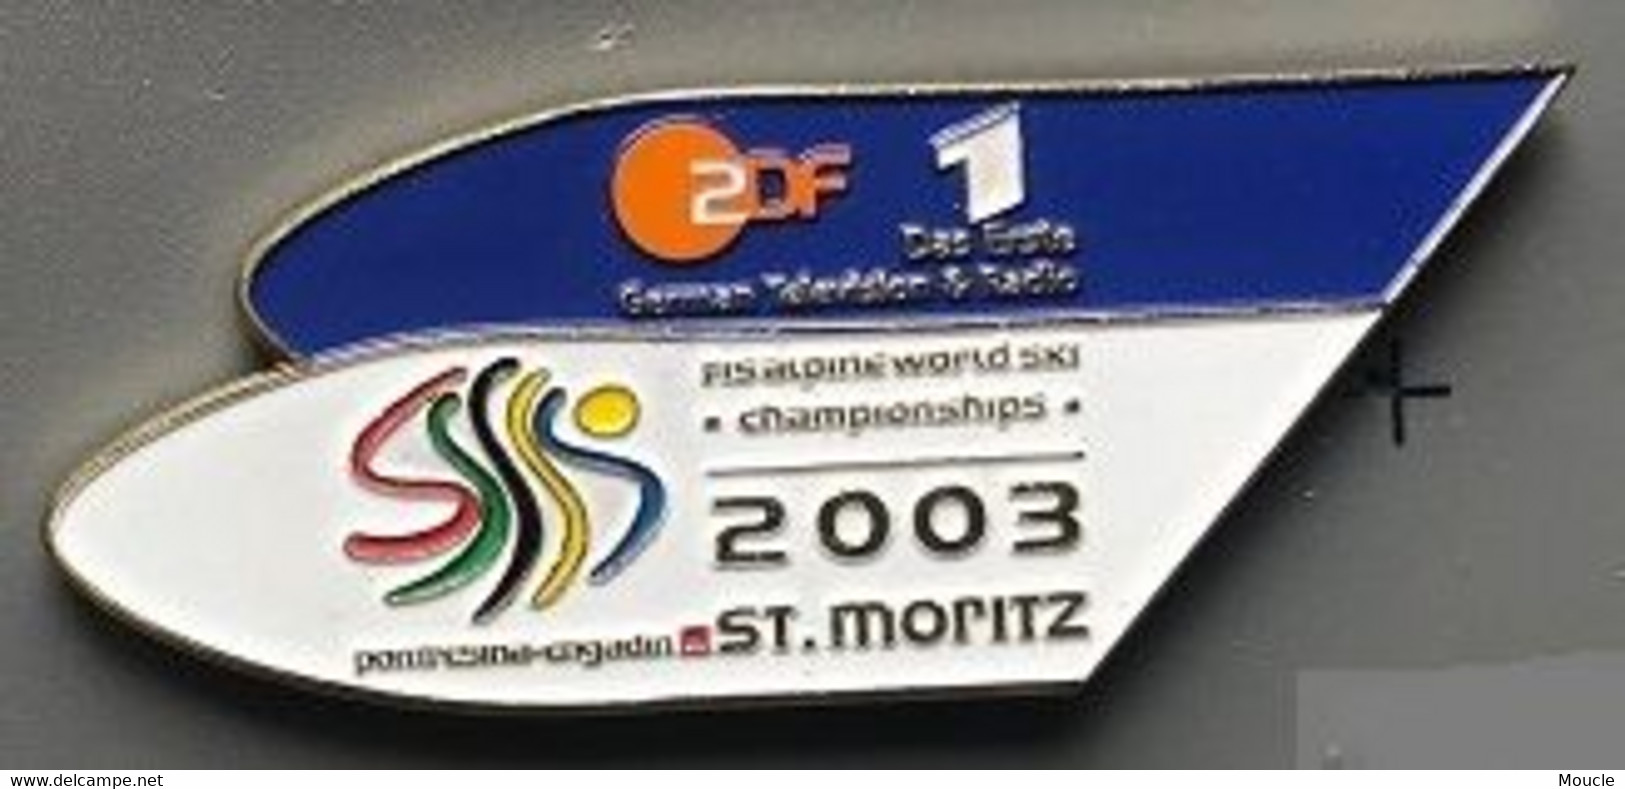 ZDF 1 - DAS ERSTE - GERMAN TELEVISON & RADIO - ALLEMAGNE - FIS ALPINE WORLD SKI - CHAMPIONSHIPS 2003 - ST MORITZ - (31) - Médias